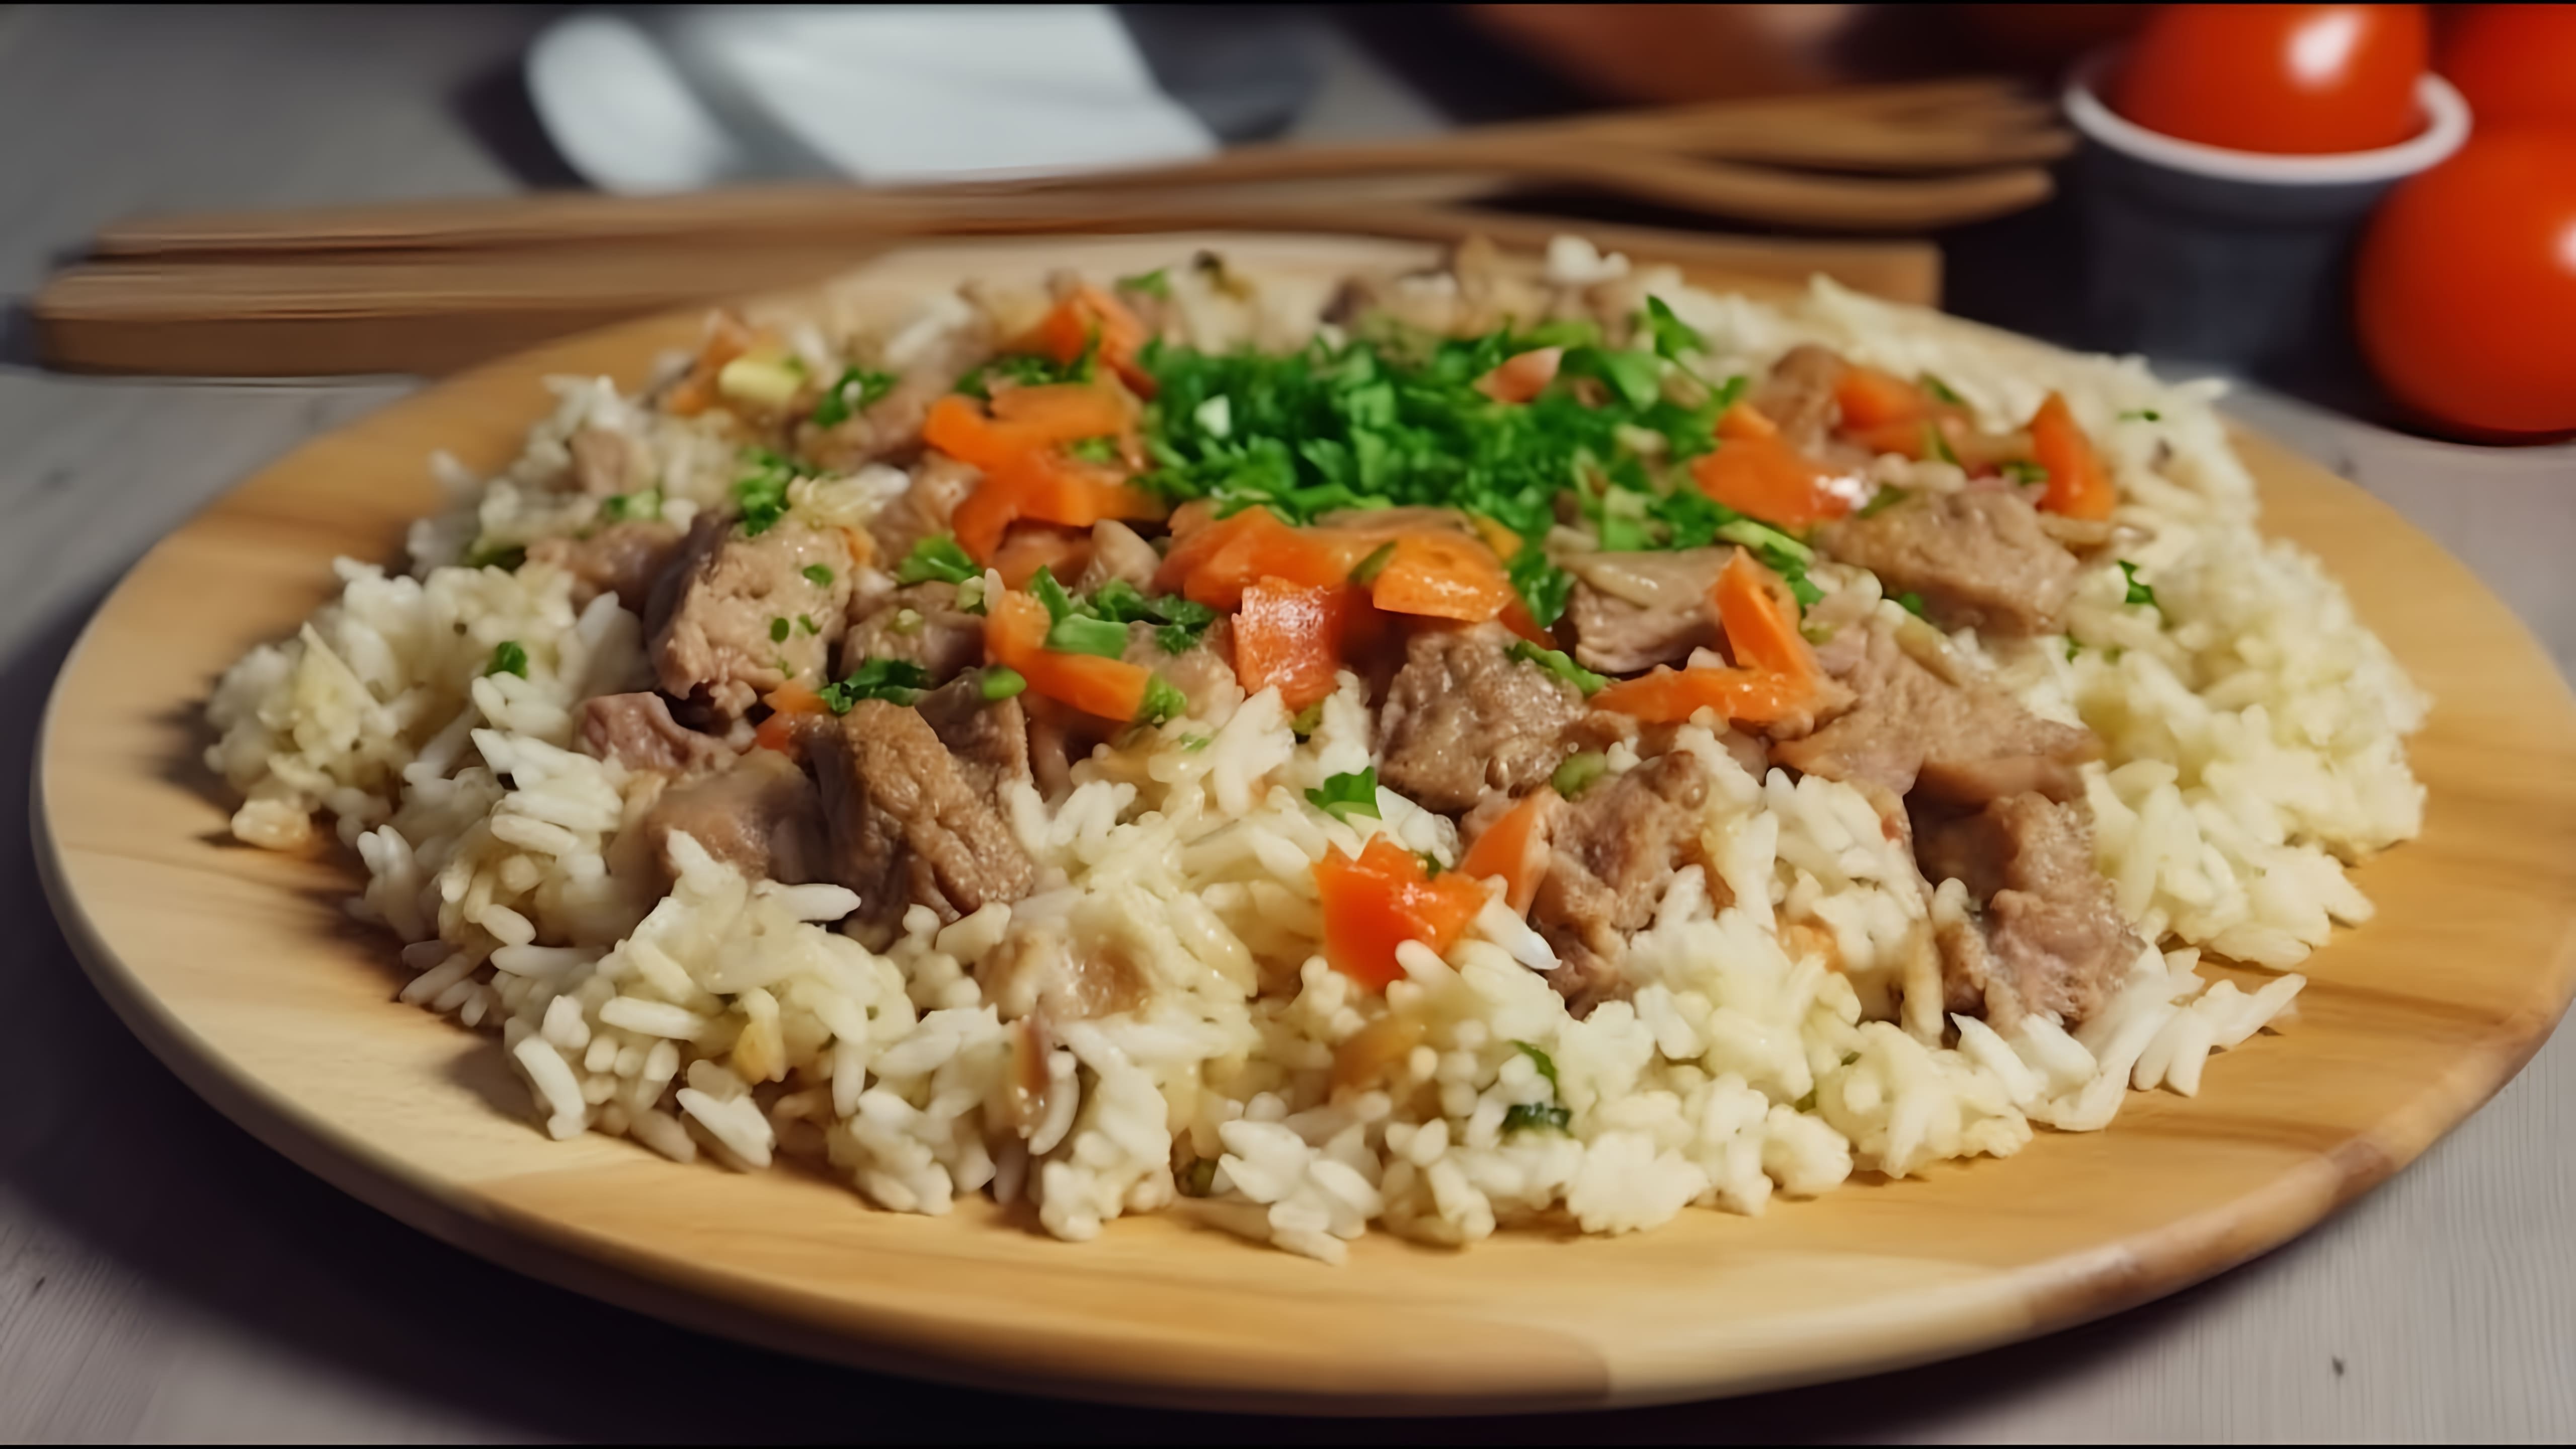 В этом видео демонстрируется процесс приготовления блюда в горшочках - овощи с мясом и рисом